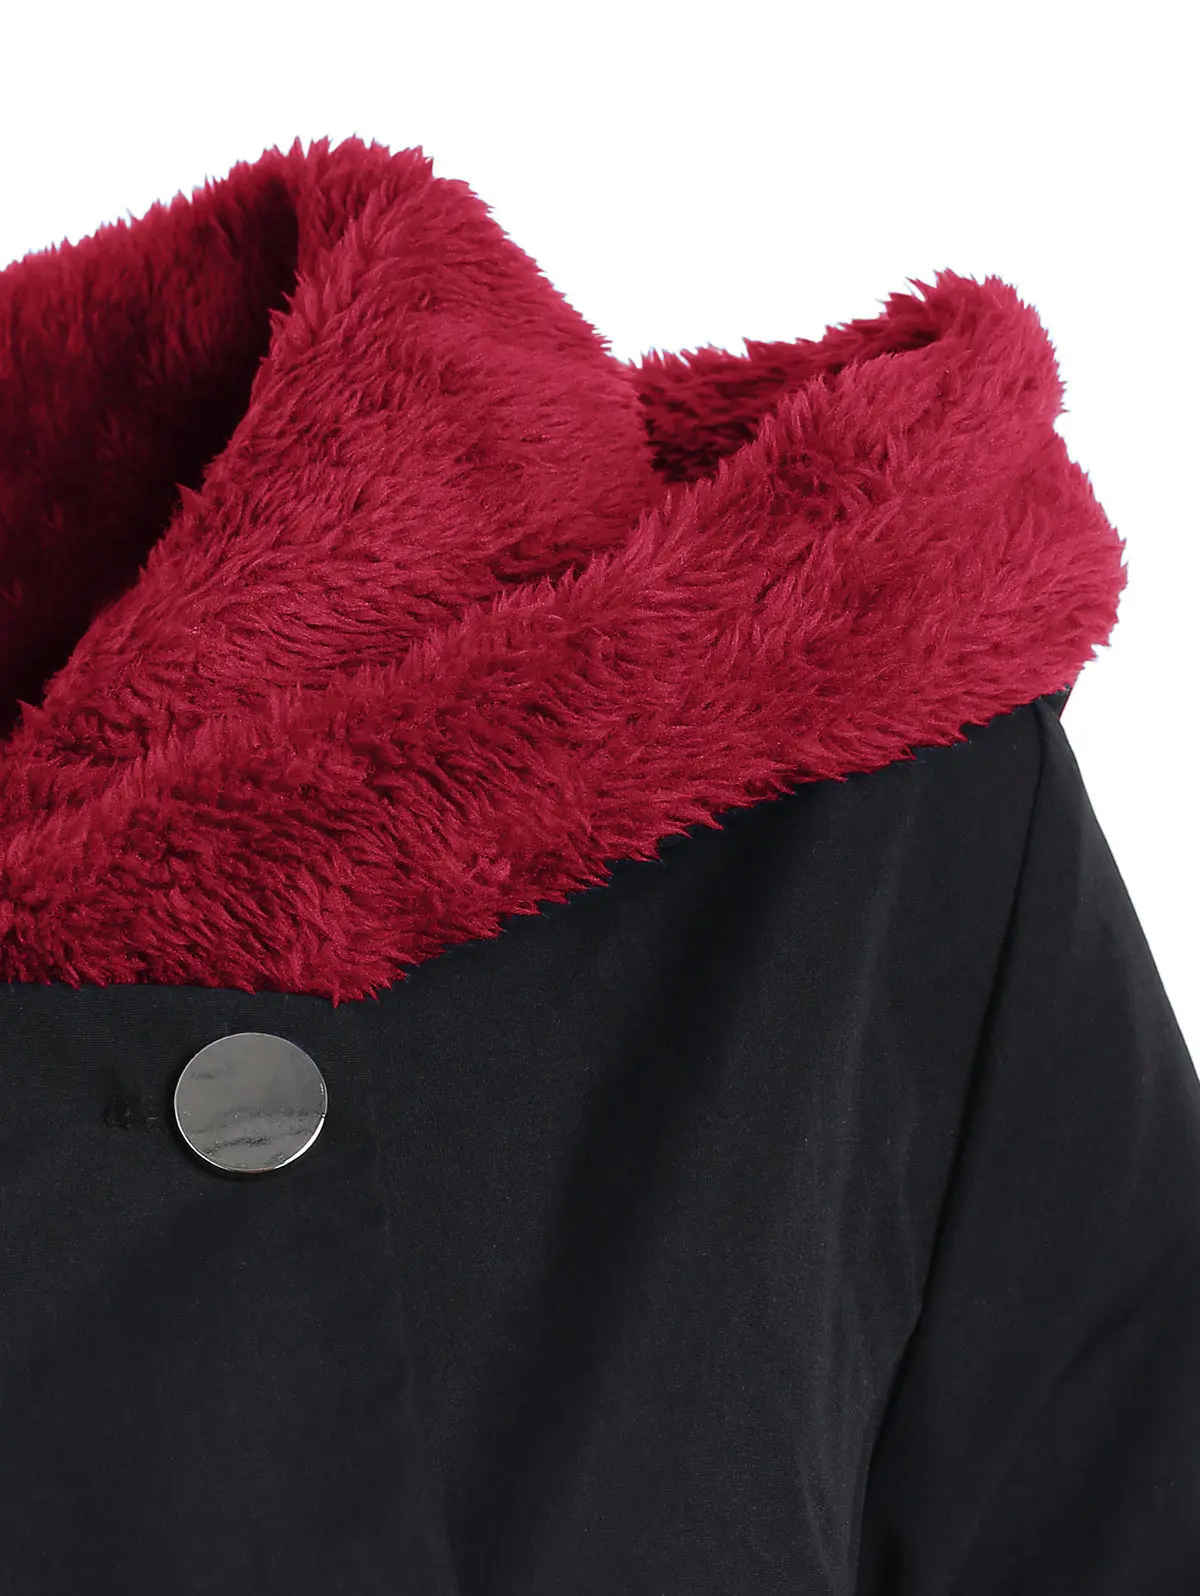 Wipalo зима плюс размеры Асимметричная флис контрастный колор блок однобортный с капюшоном юбка для женщин пальто Длинная Верхняя одежда пальт